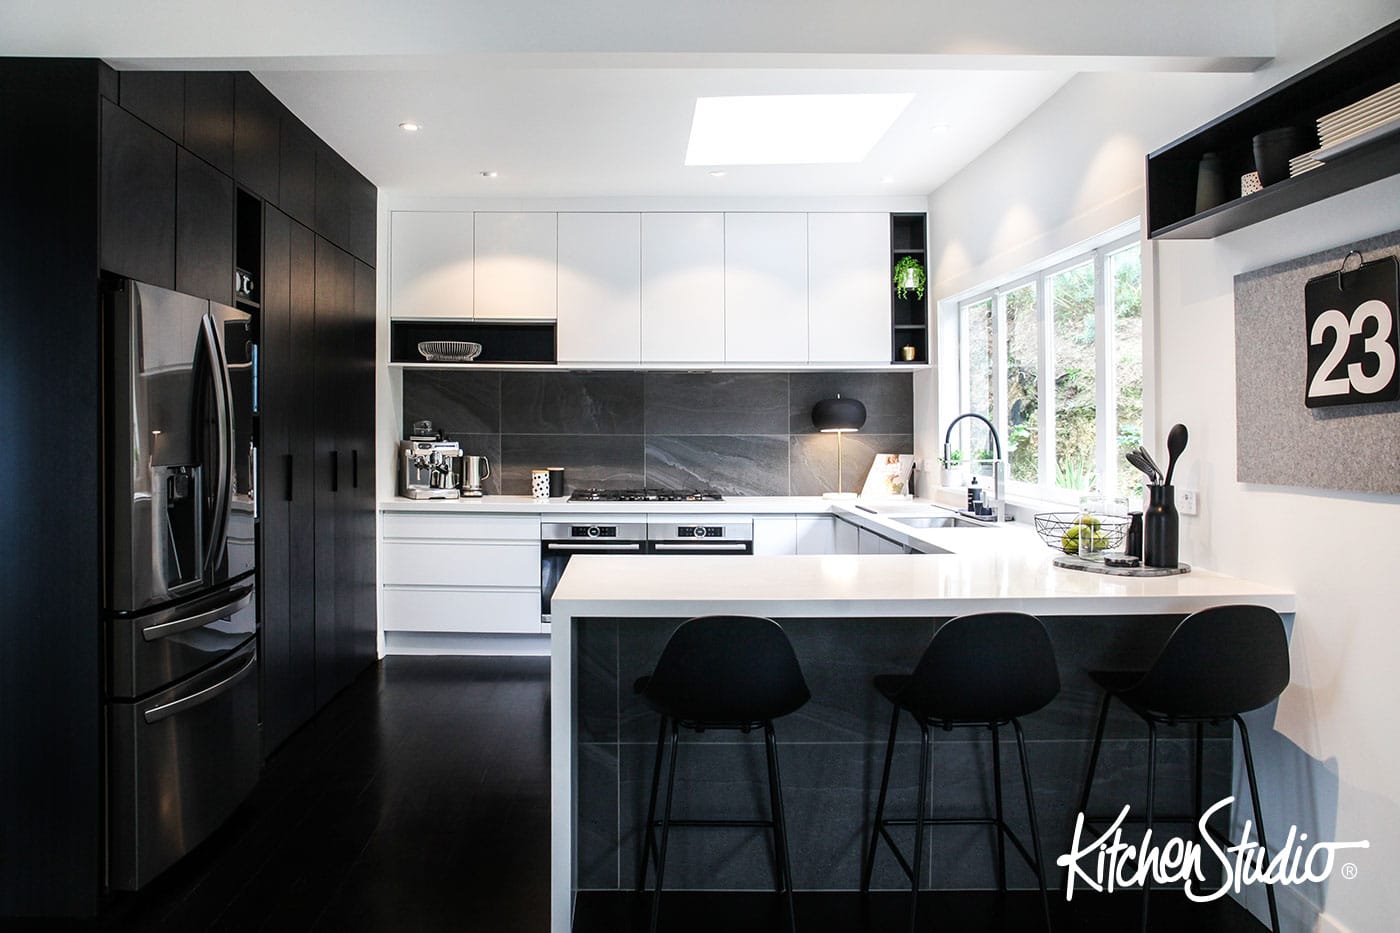 Kitchen Design Gallery Kitchen Studio